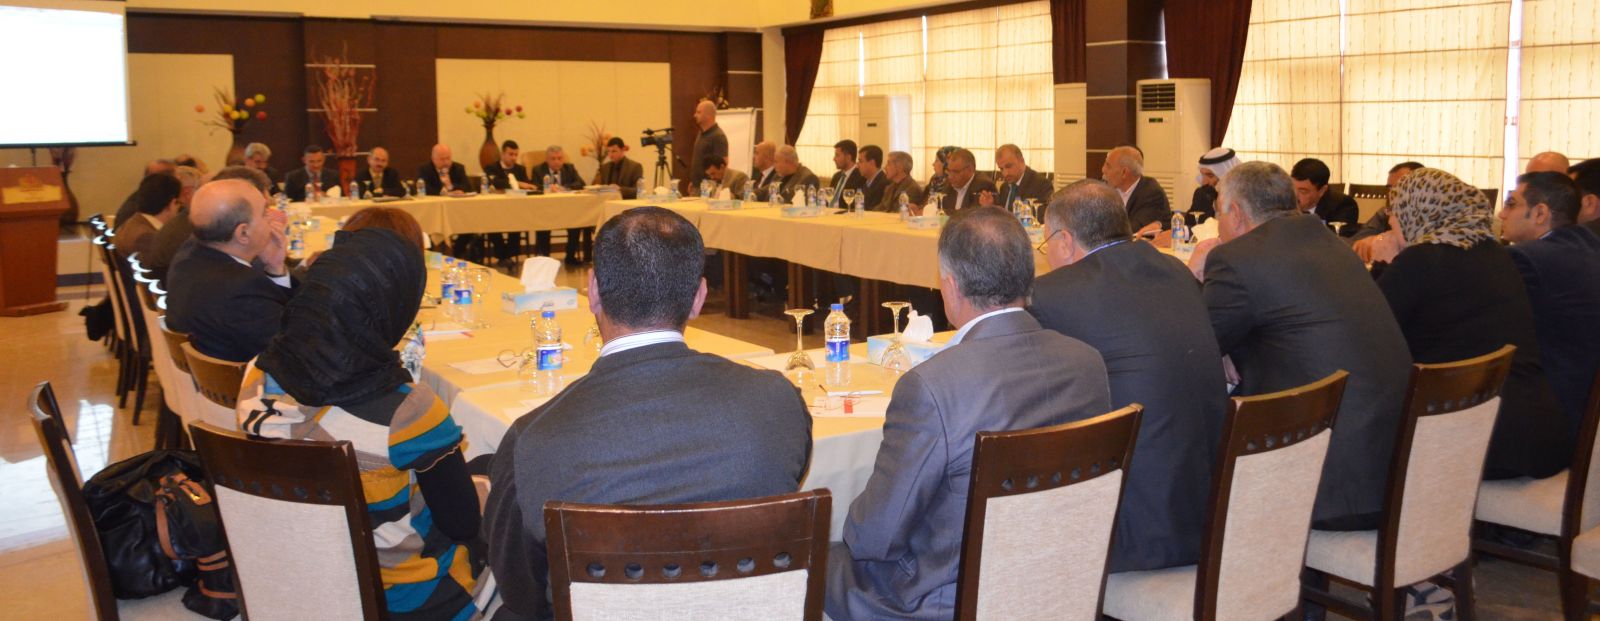 alliance for iraqi minorities meeting